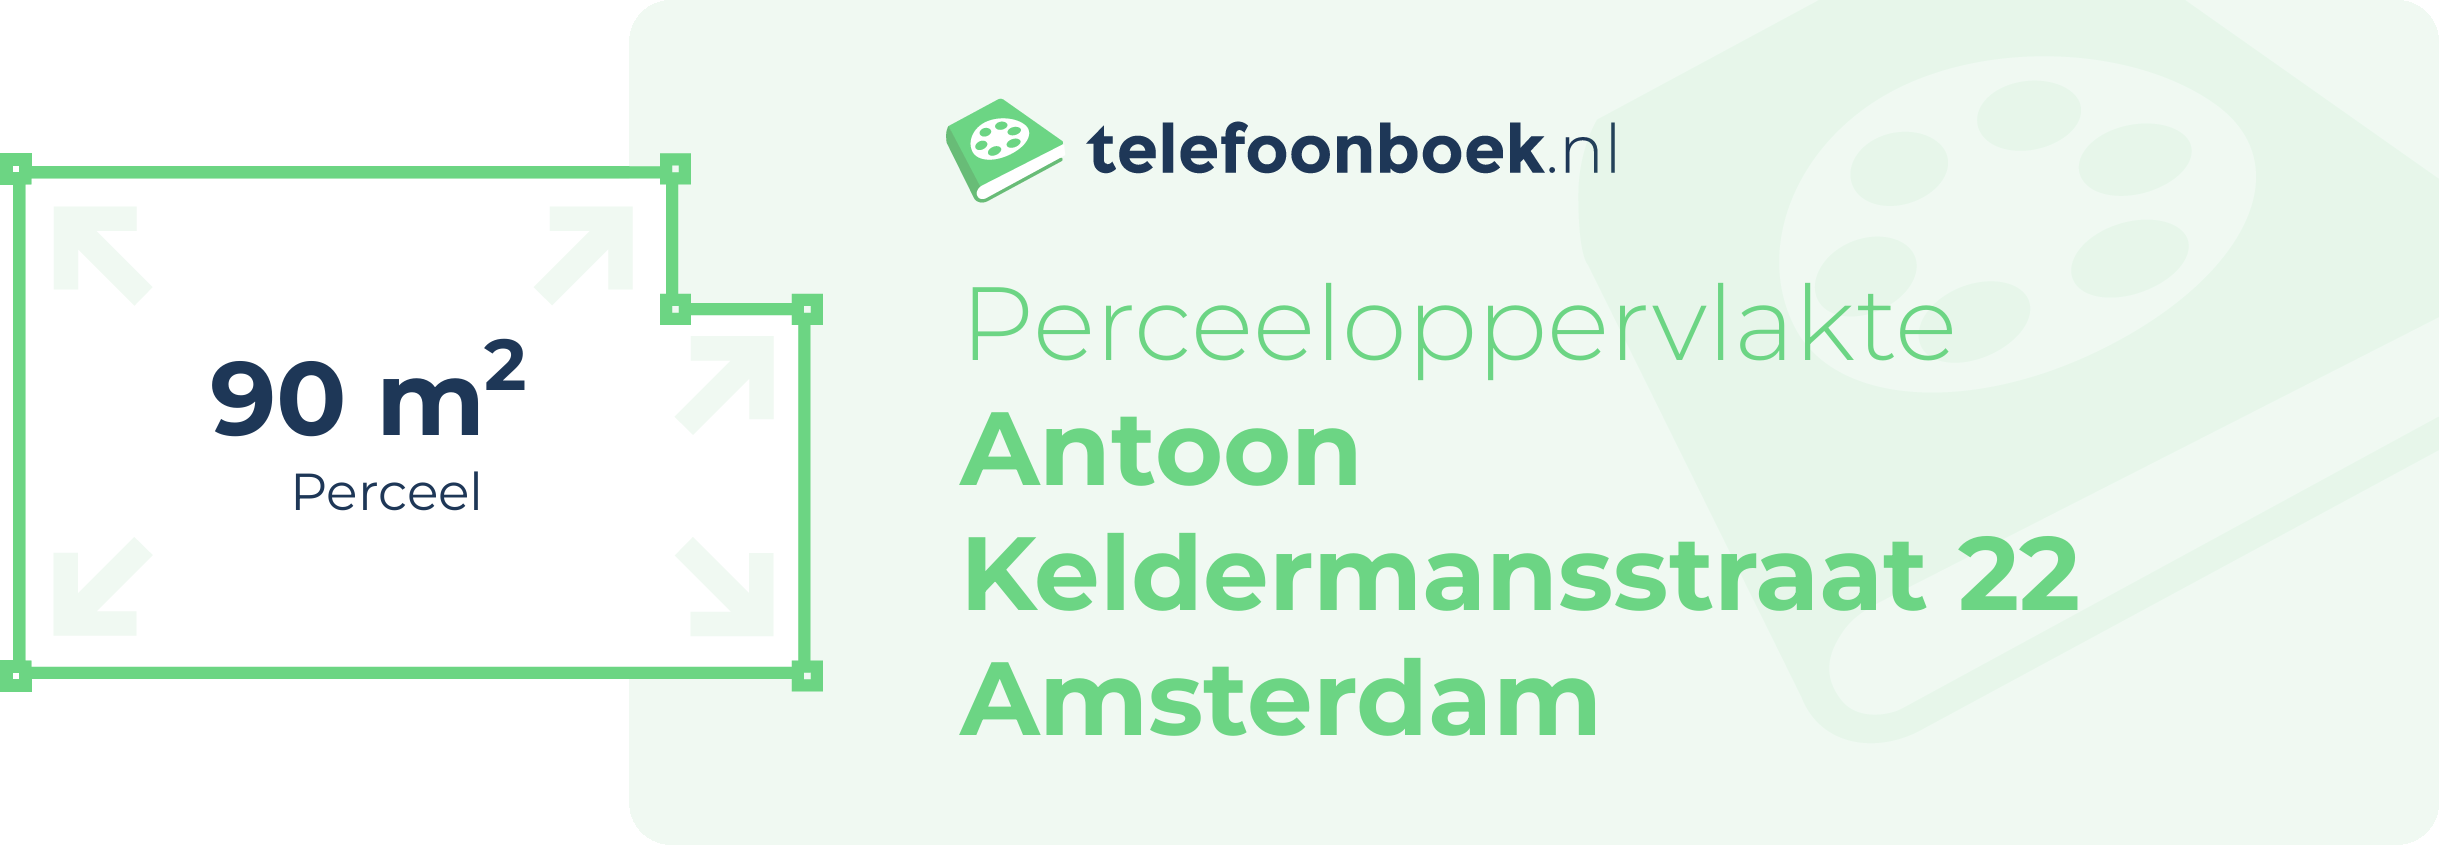 Perceeloppervlakte Antoon Keldermansstraat 22 Amsterdam